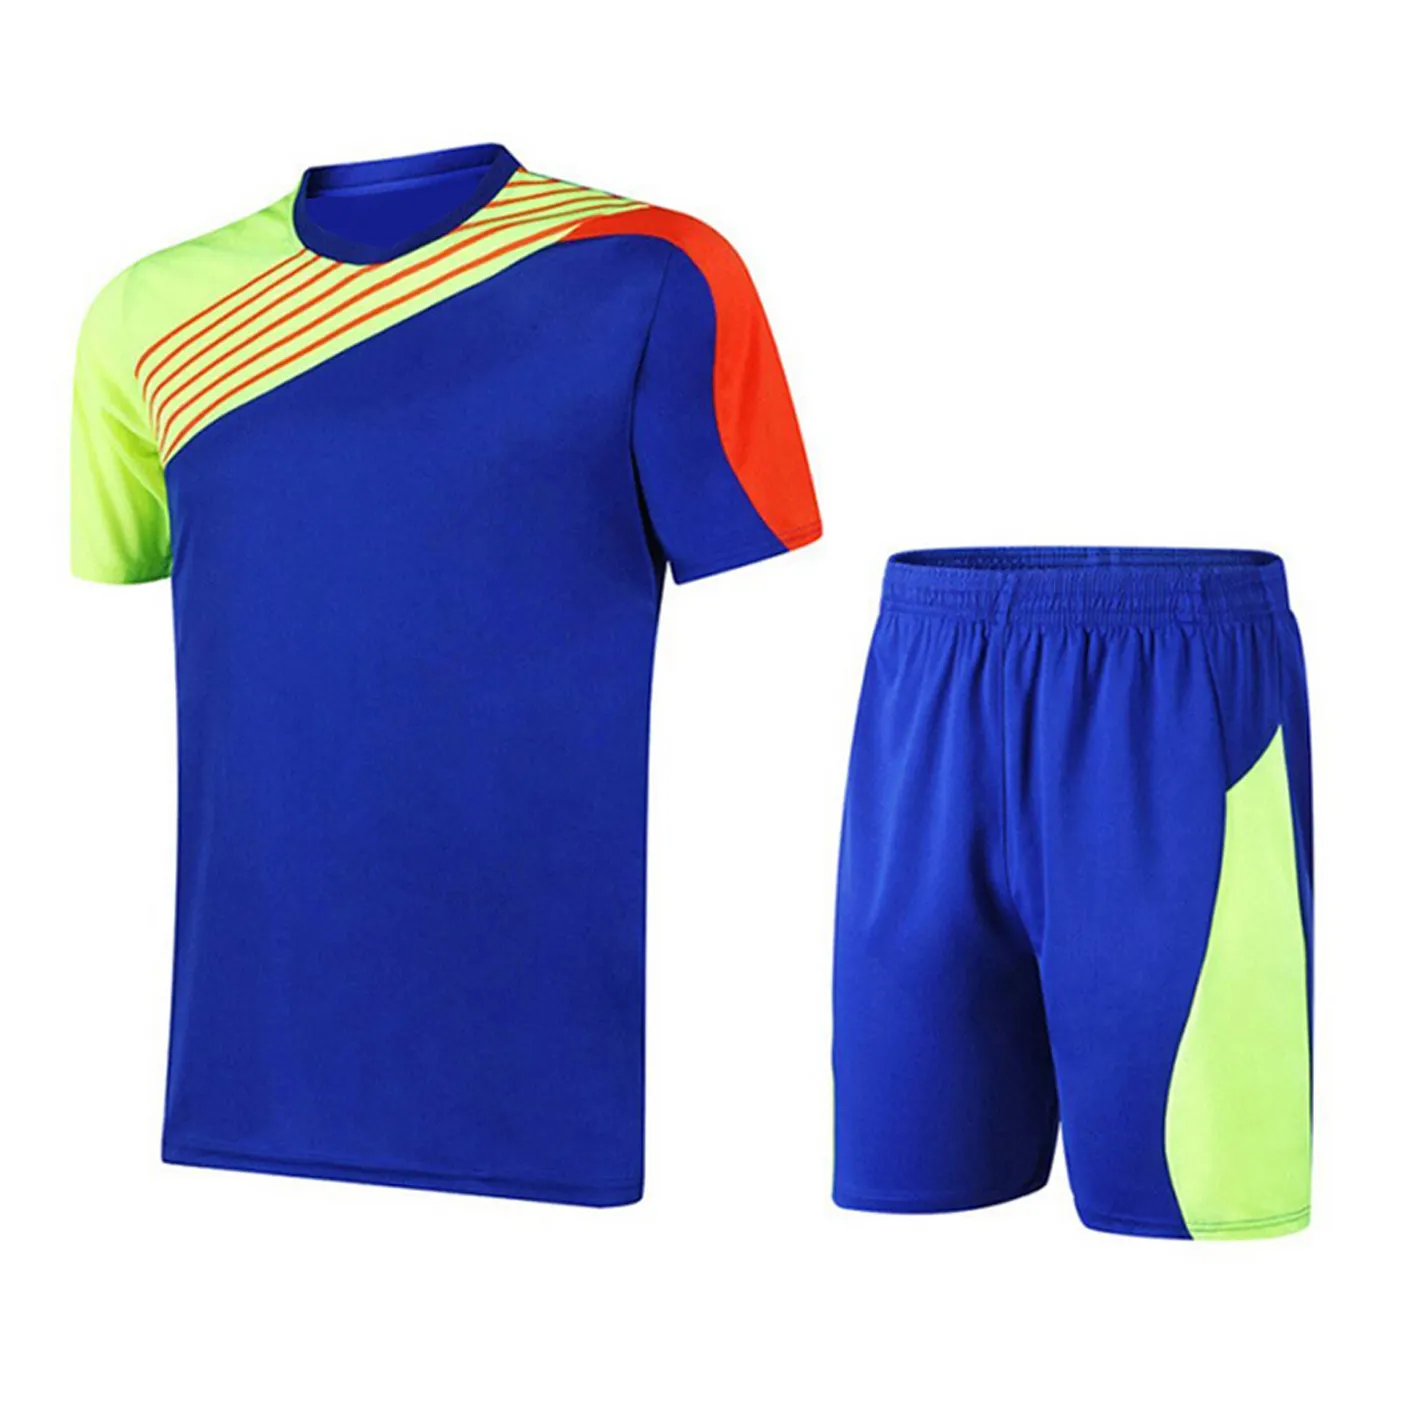 Kendi tasarım futbol formaları/özel yapım futbol üniforması süblimasyon forması ve şort/spor giyim futbol üniformaları unisex